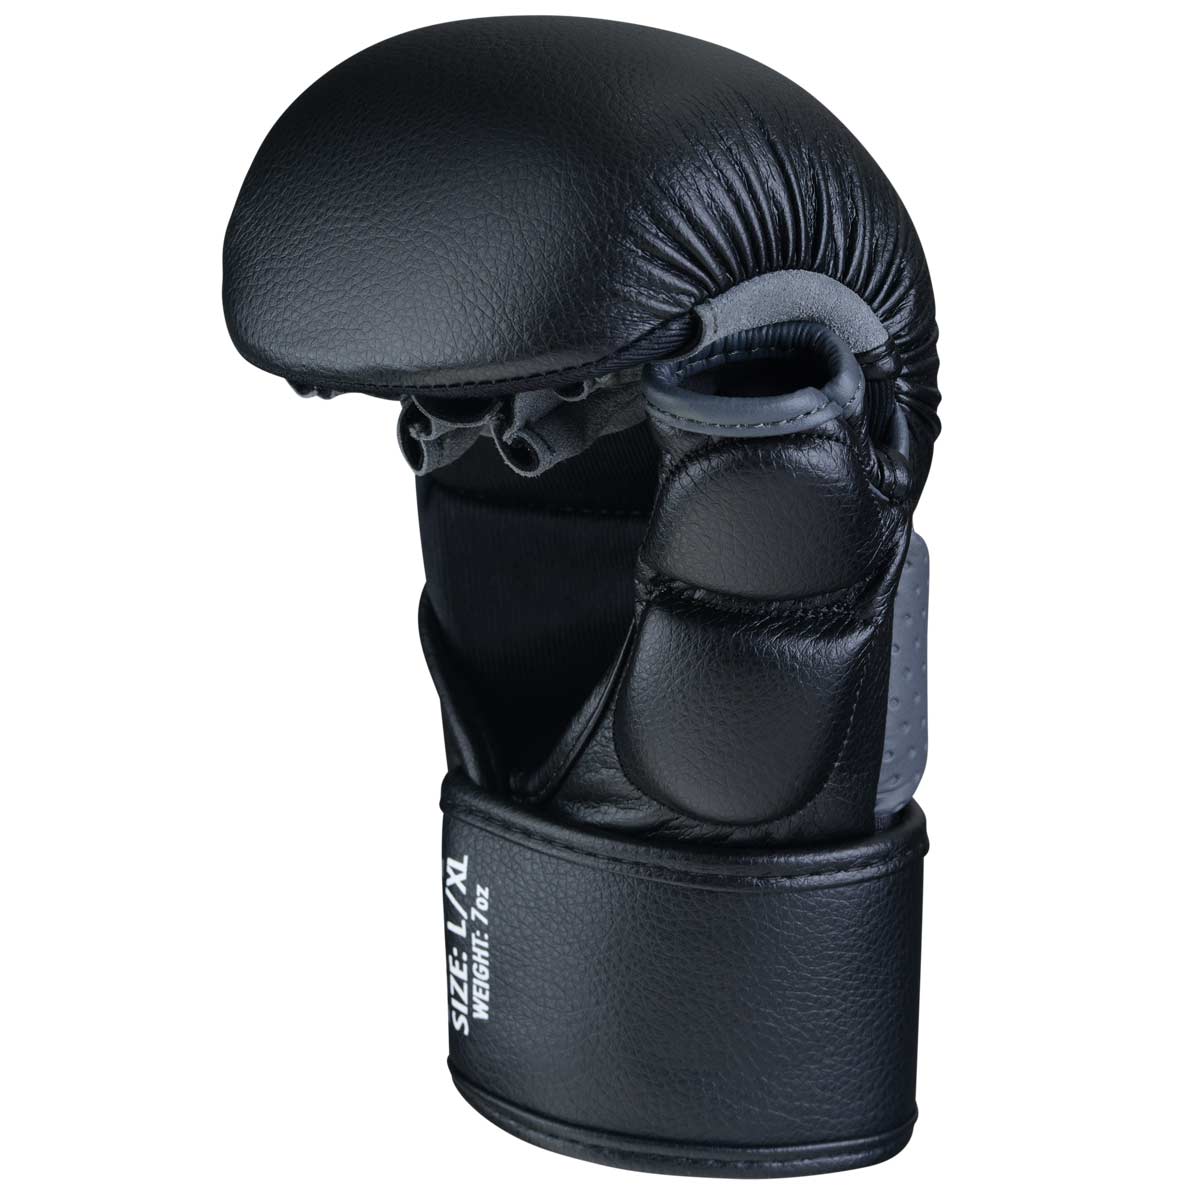 Der Phantom RIOT MMA Handschuh rechts mit Daumenschutz in der Innenansicht